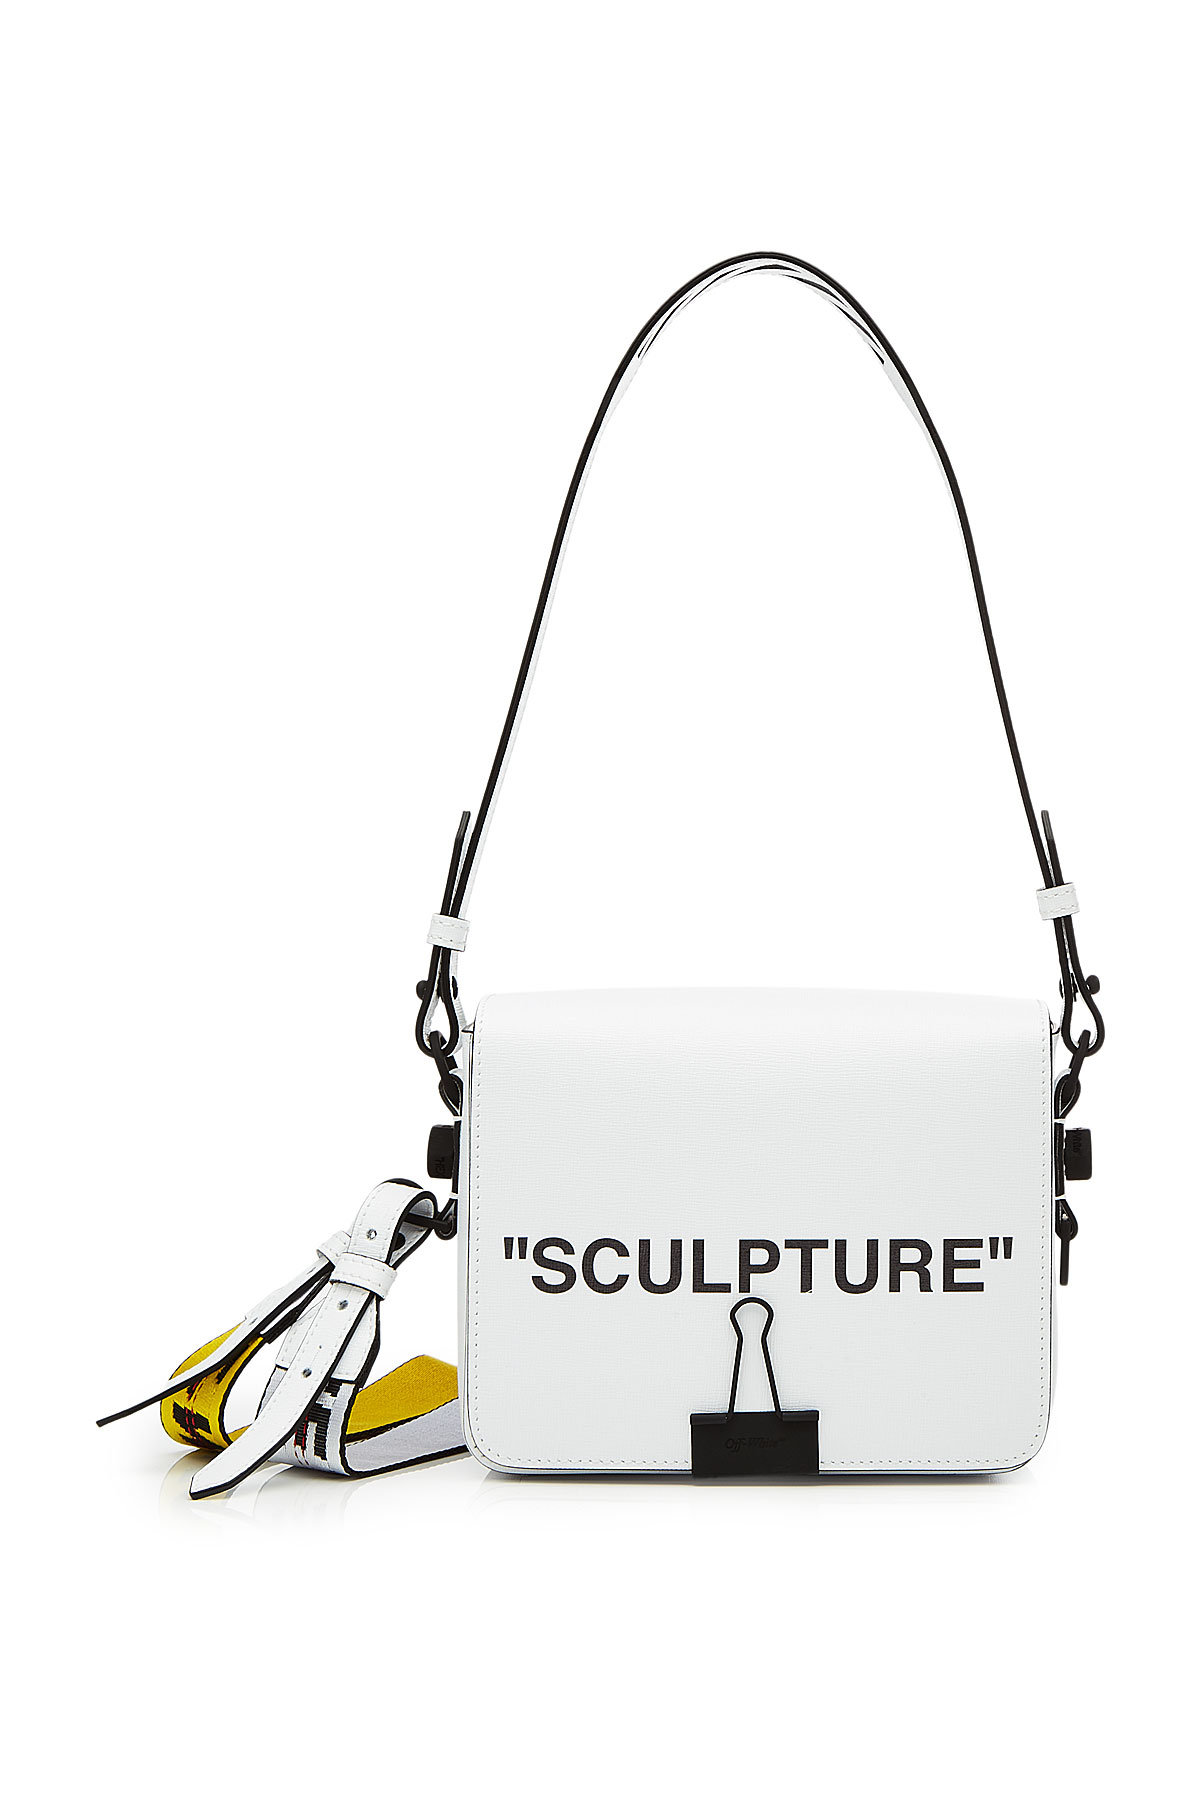 Off-White - Sculpture Leather Shoulder Bag